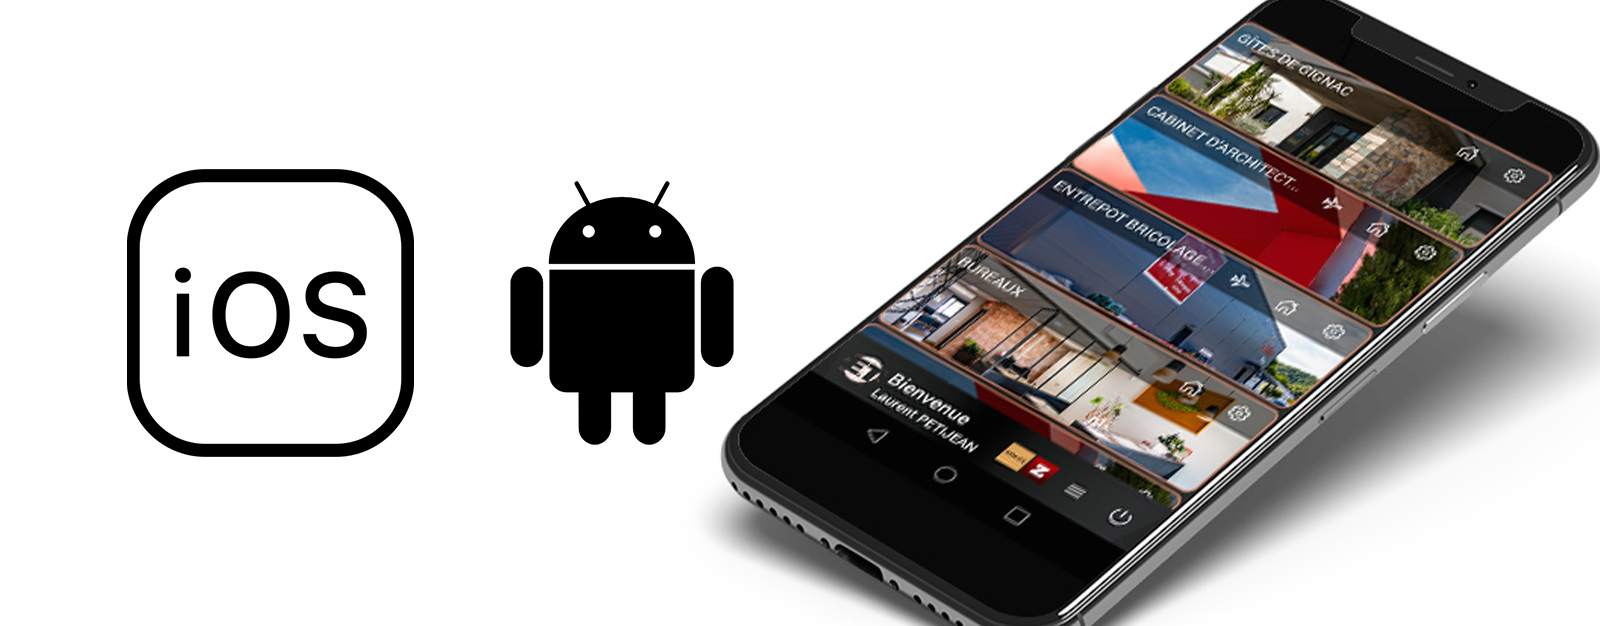 Logos ios et androïd avec un smartphone sur l'application mobile et connexion